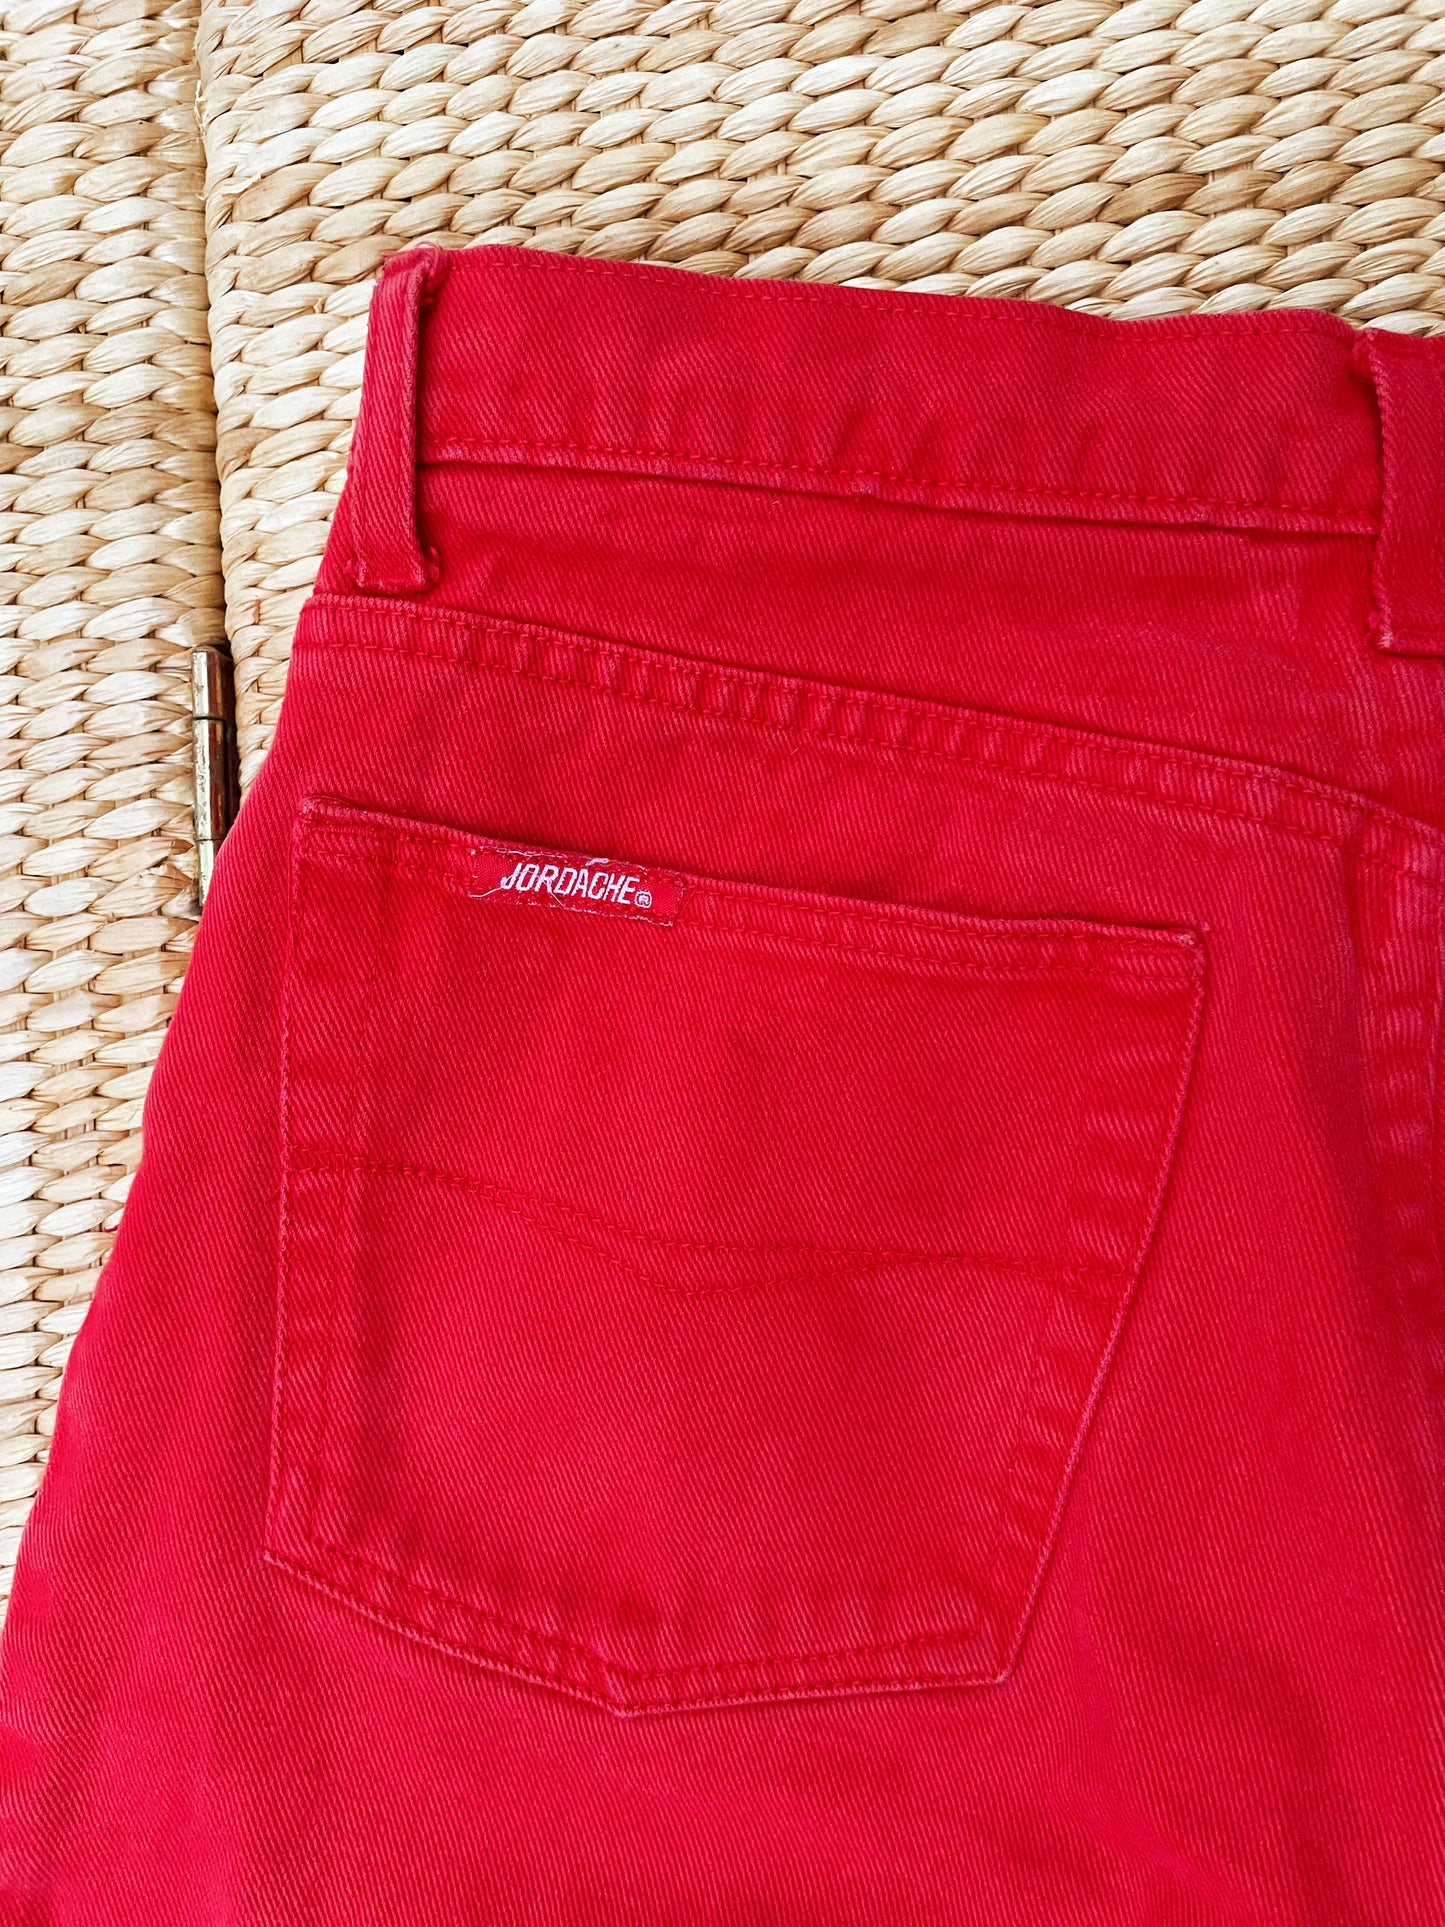 Vintage Jordache Red Denim